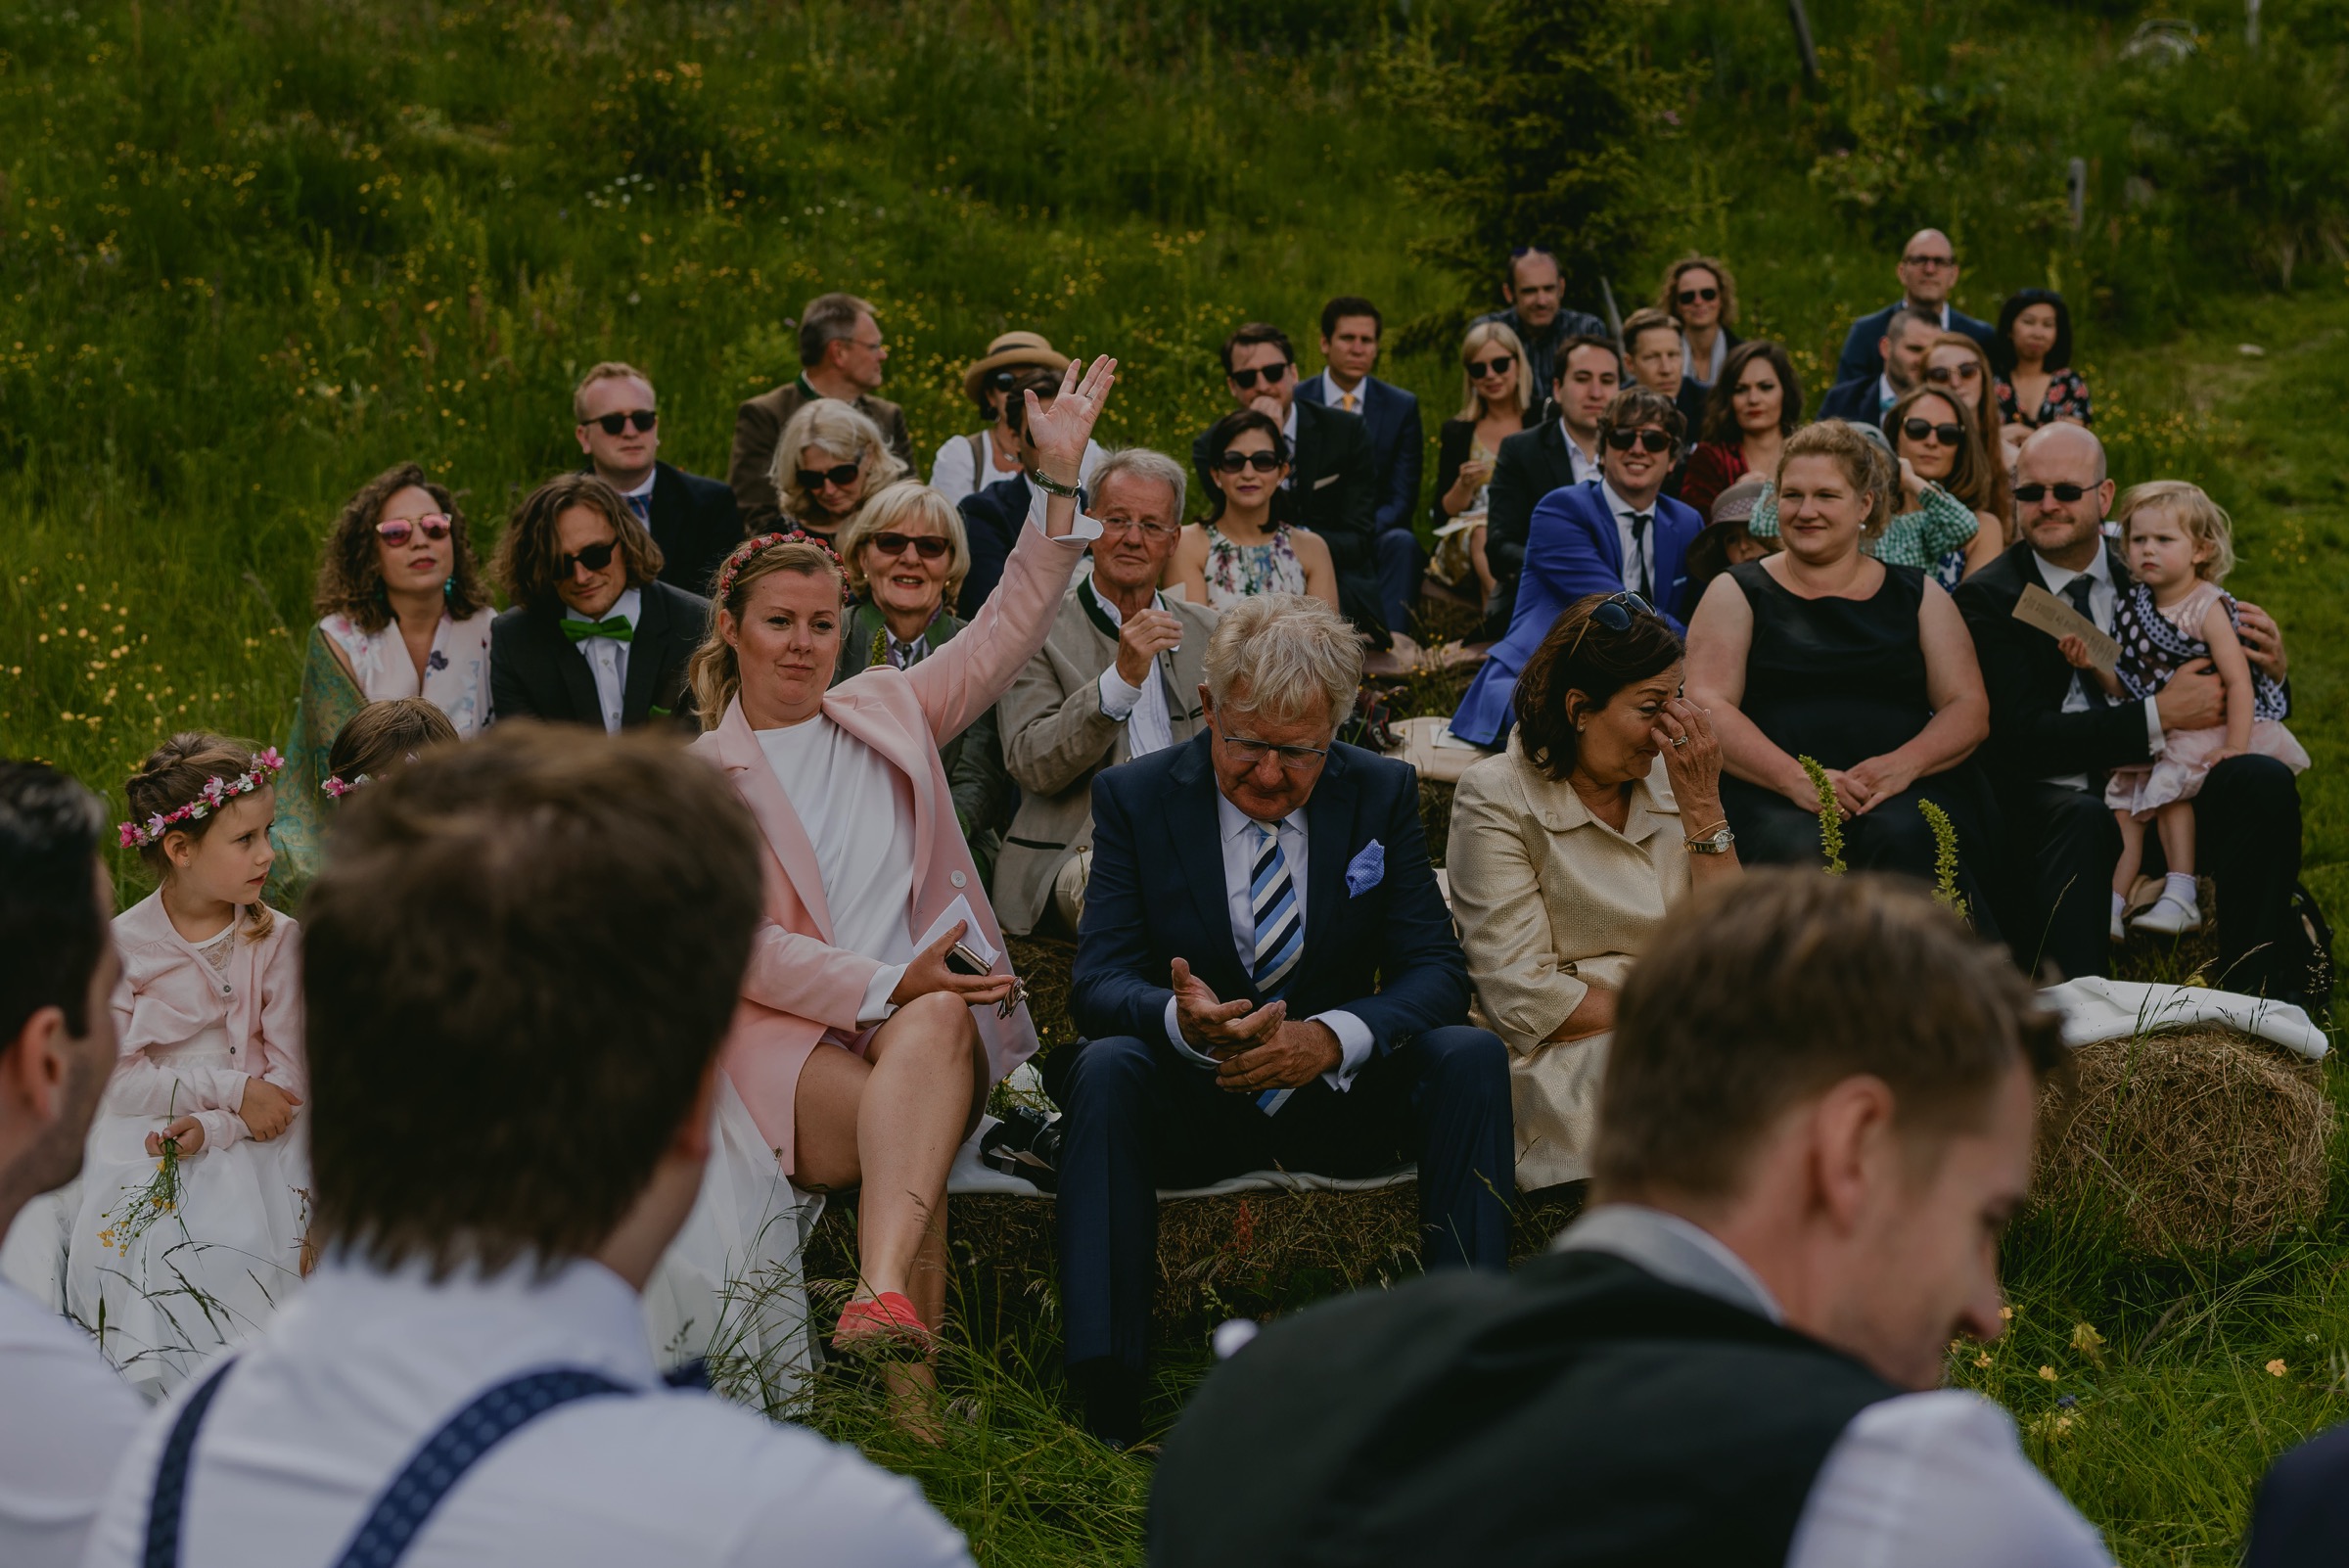 outdoor ceremony destination wedding in austria alps